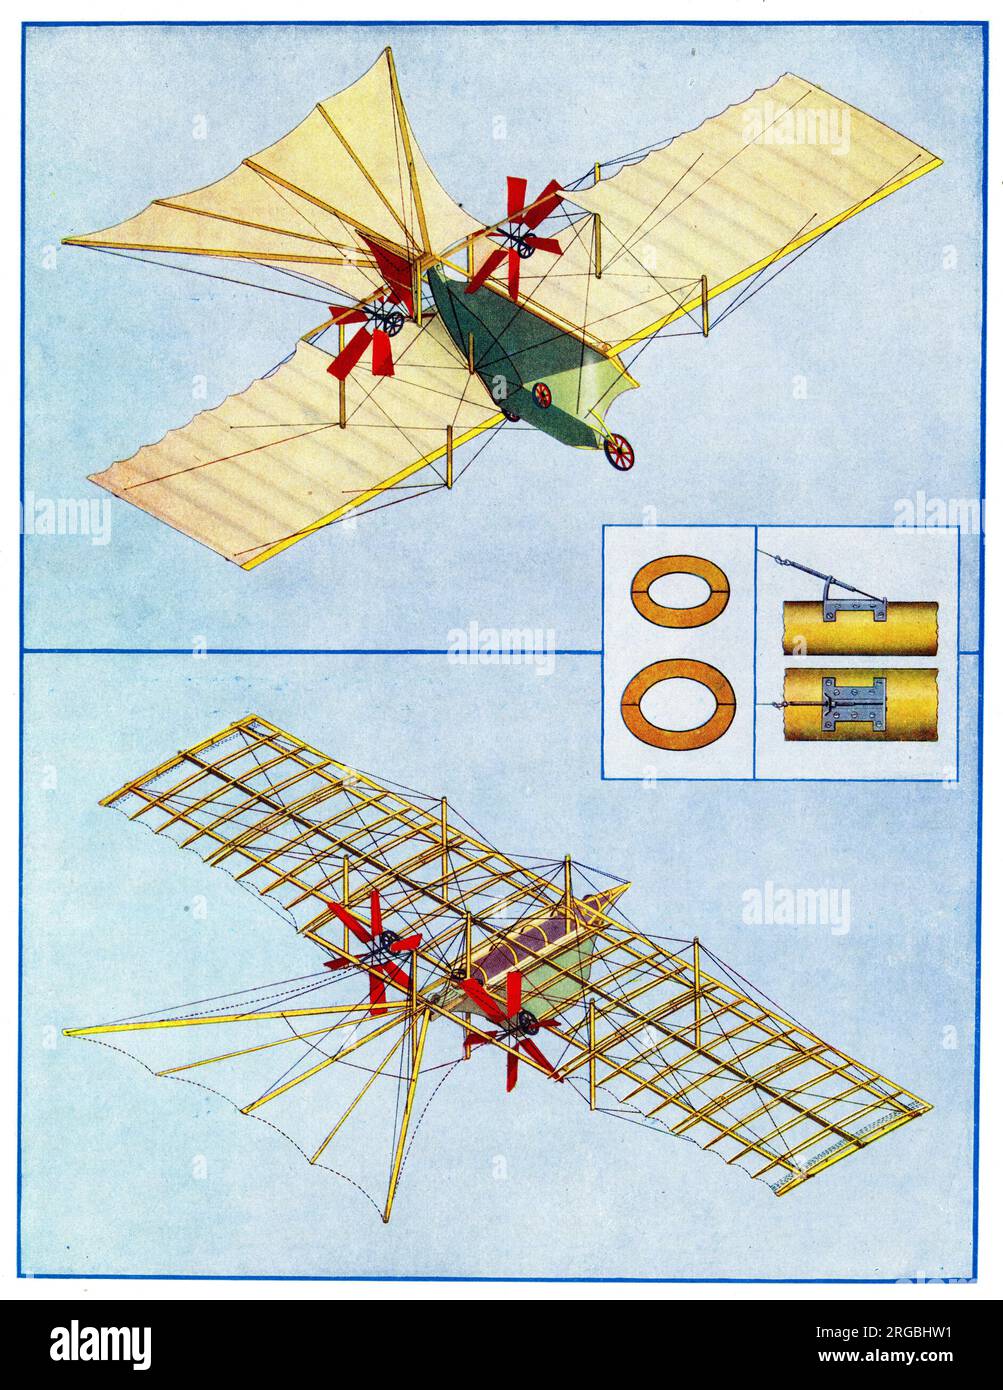 Steam Flying Machine Aircraft vorgeschlagen von William Samuel Henson in seinem Patent von 1842 Stockfoto